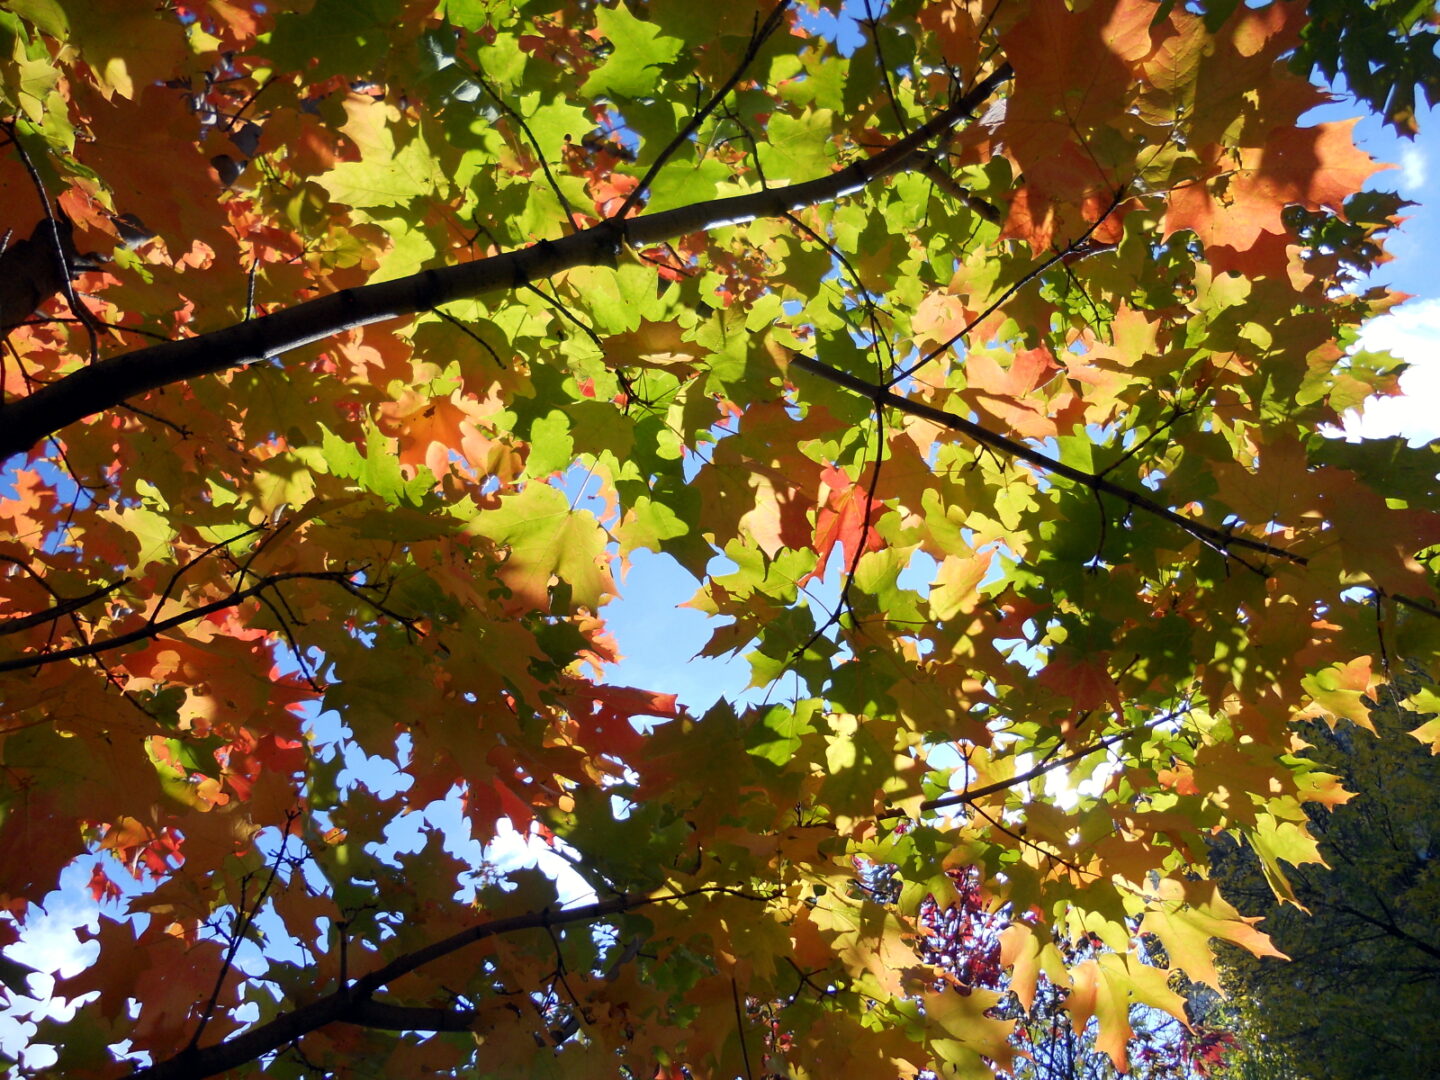 “Autumn Canopy” by Safiya Keita